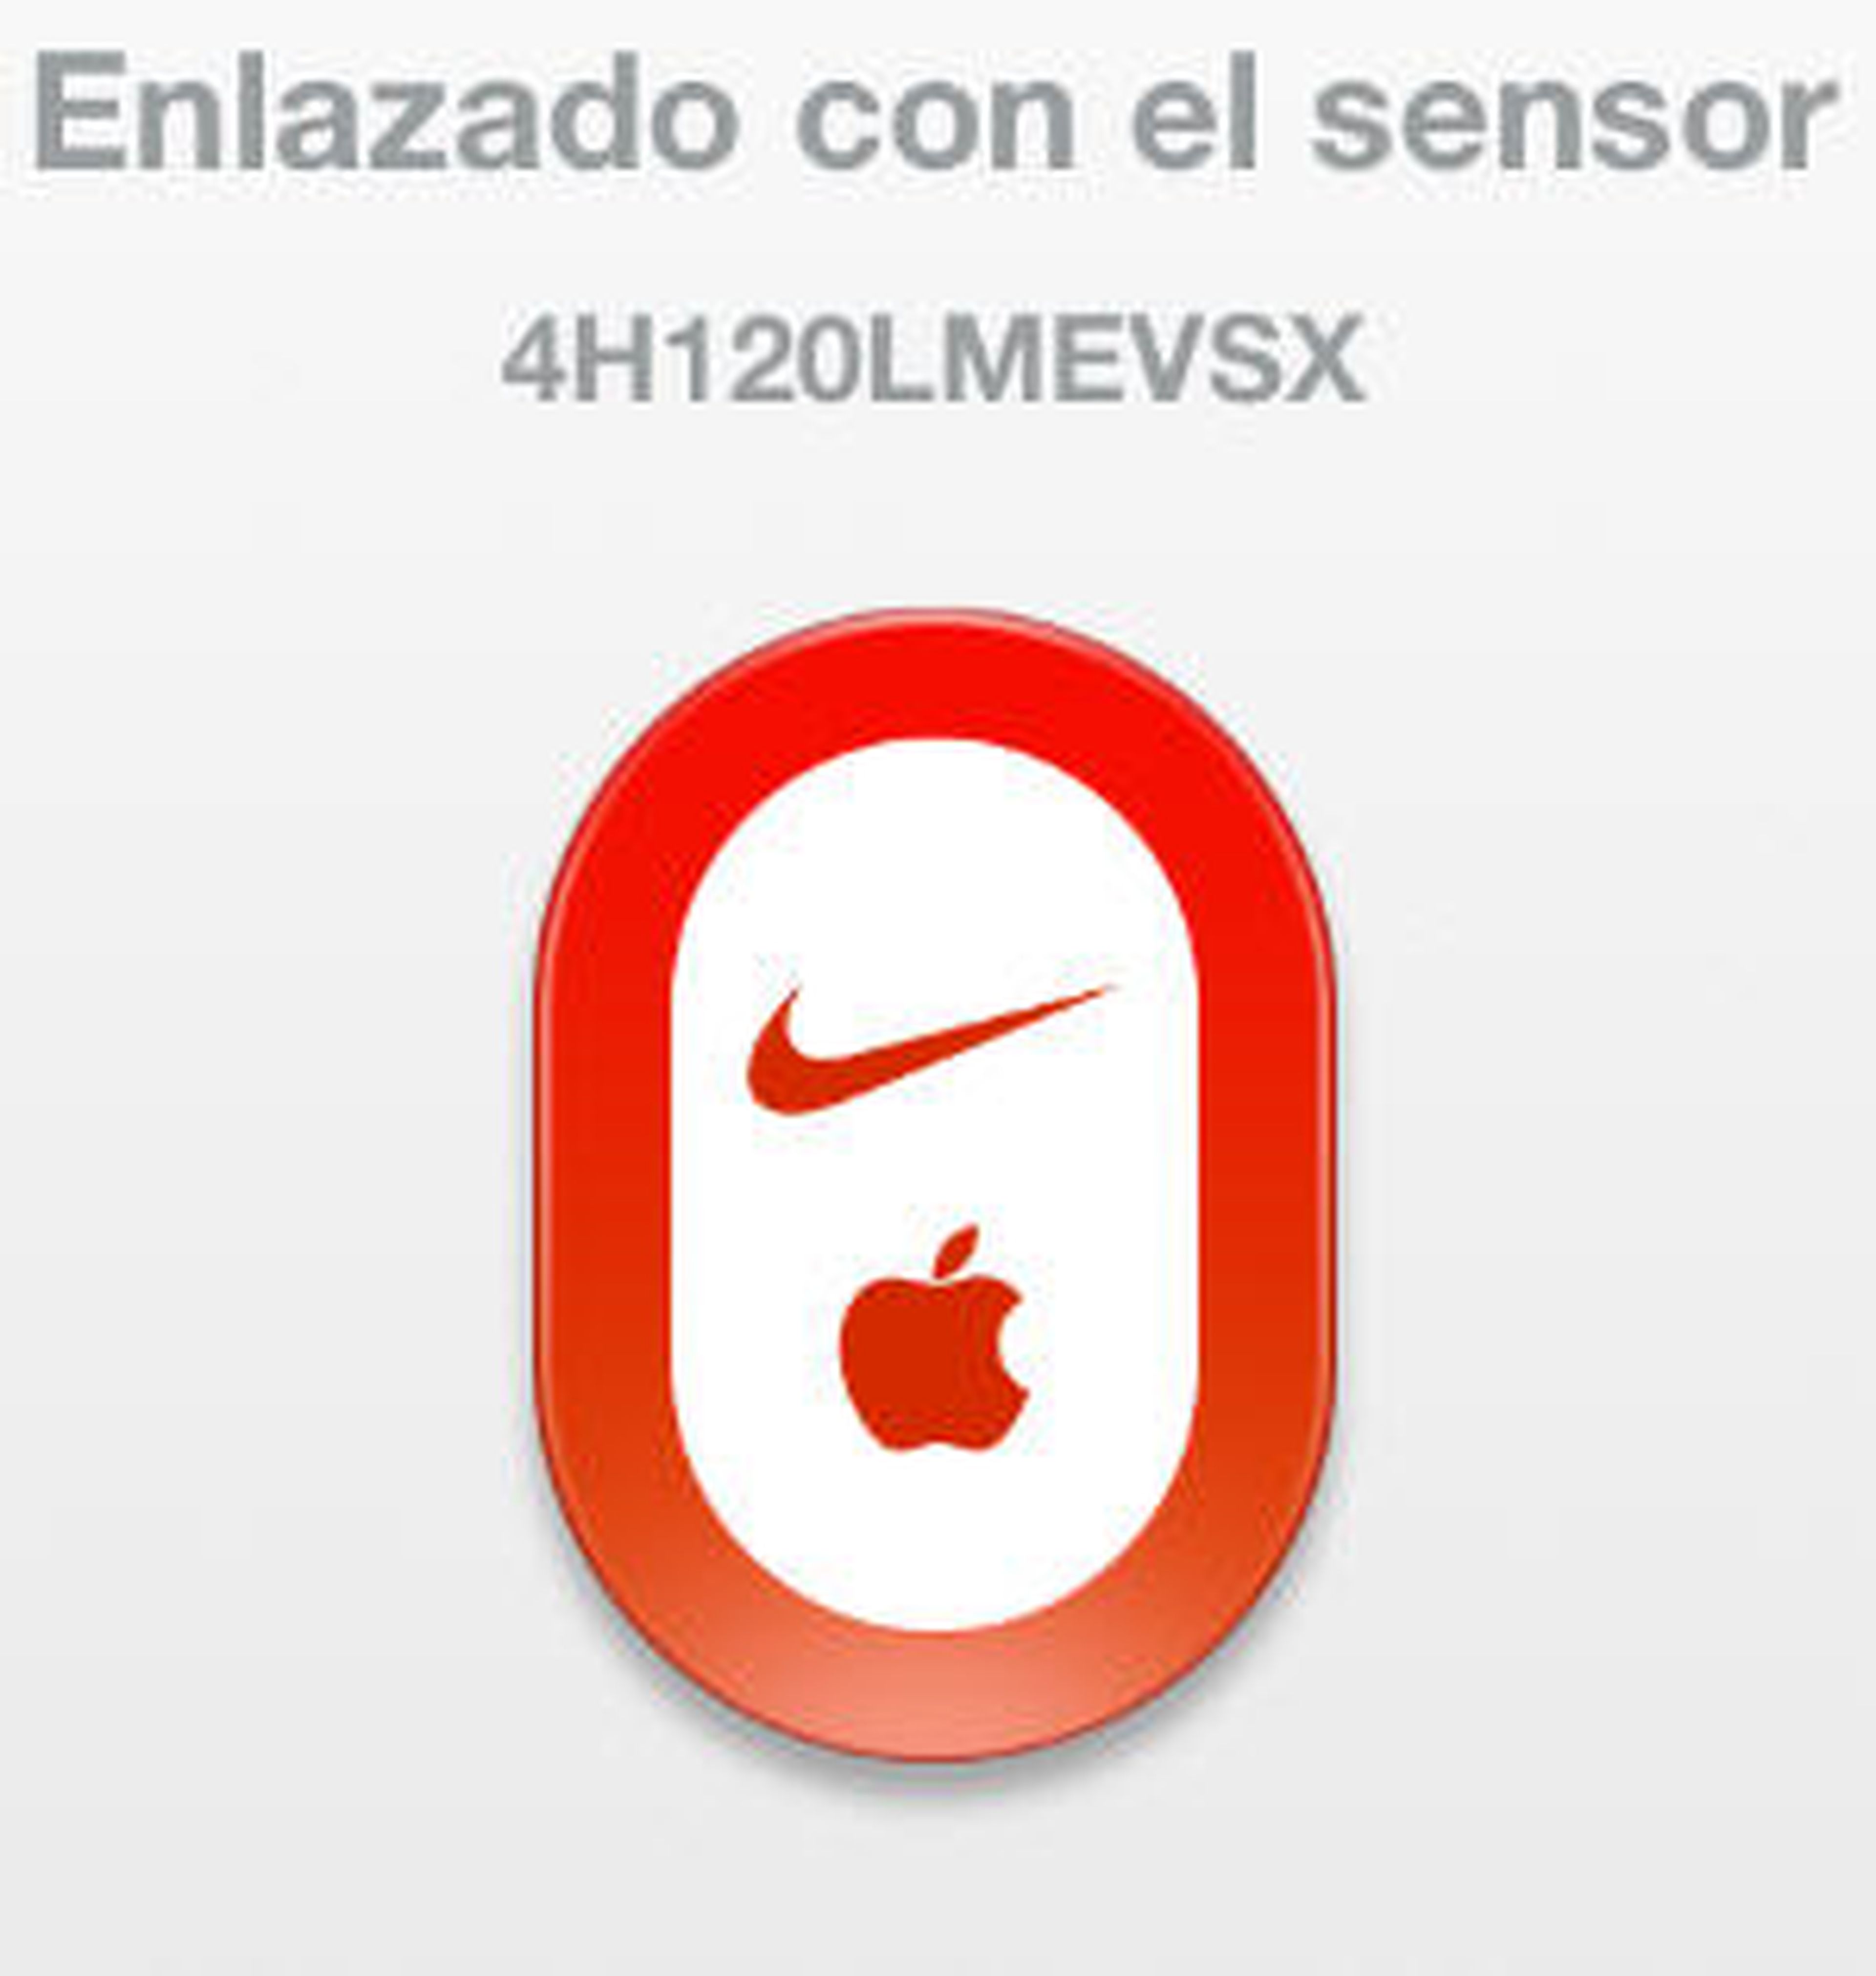 repentino Riego Mediante Practica el running con Nike y tu iPhone | Computer Hoy